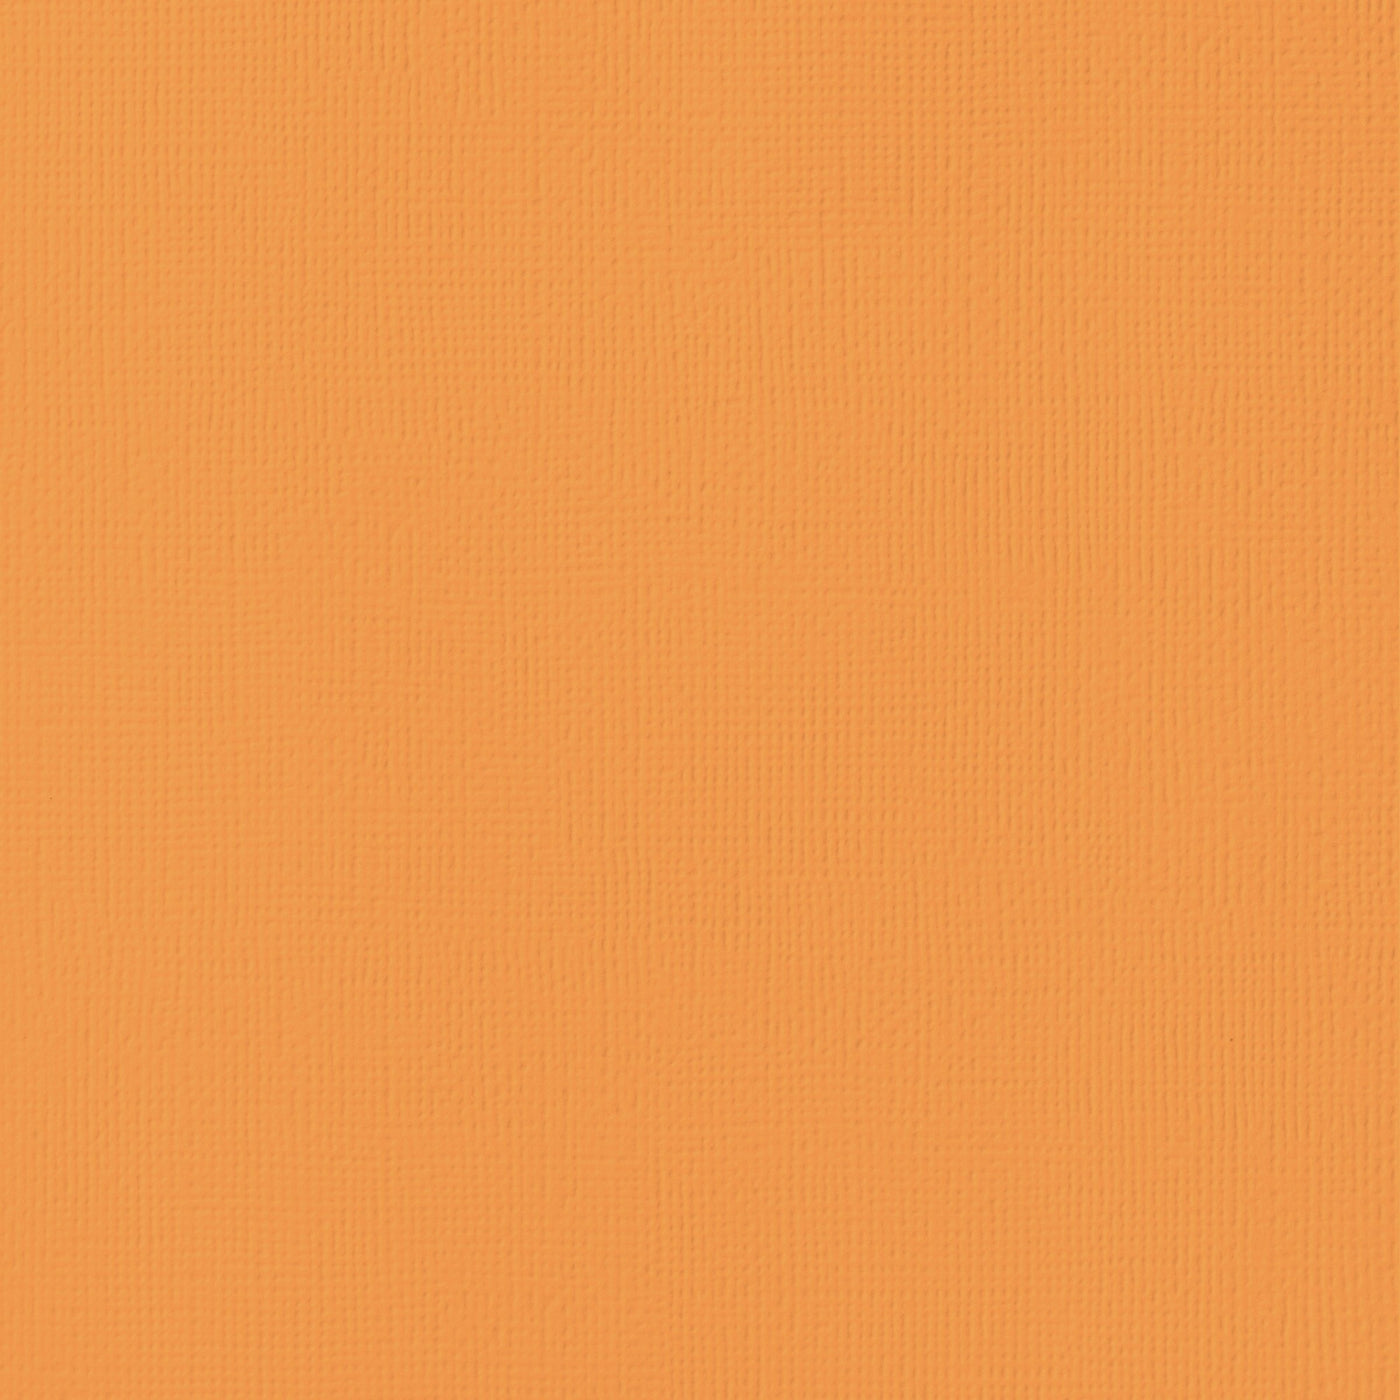 TANGERINE orange cardstock - 12x12 inch - 80 lb - textured scrapbook paper - American Crafts